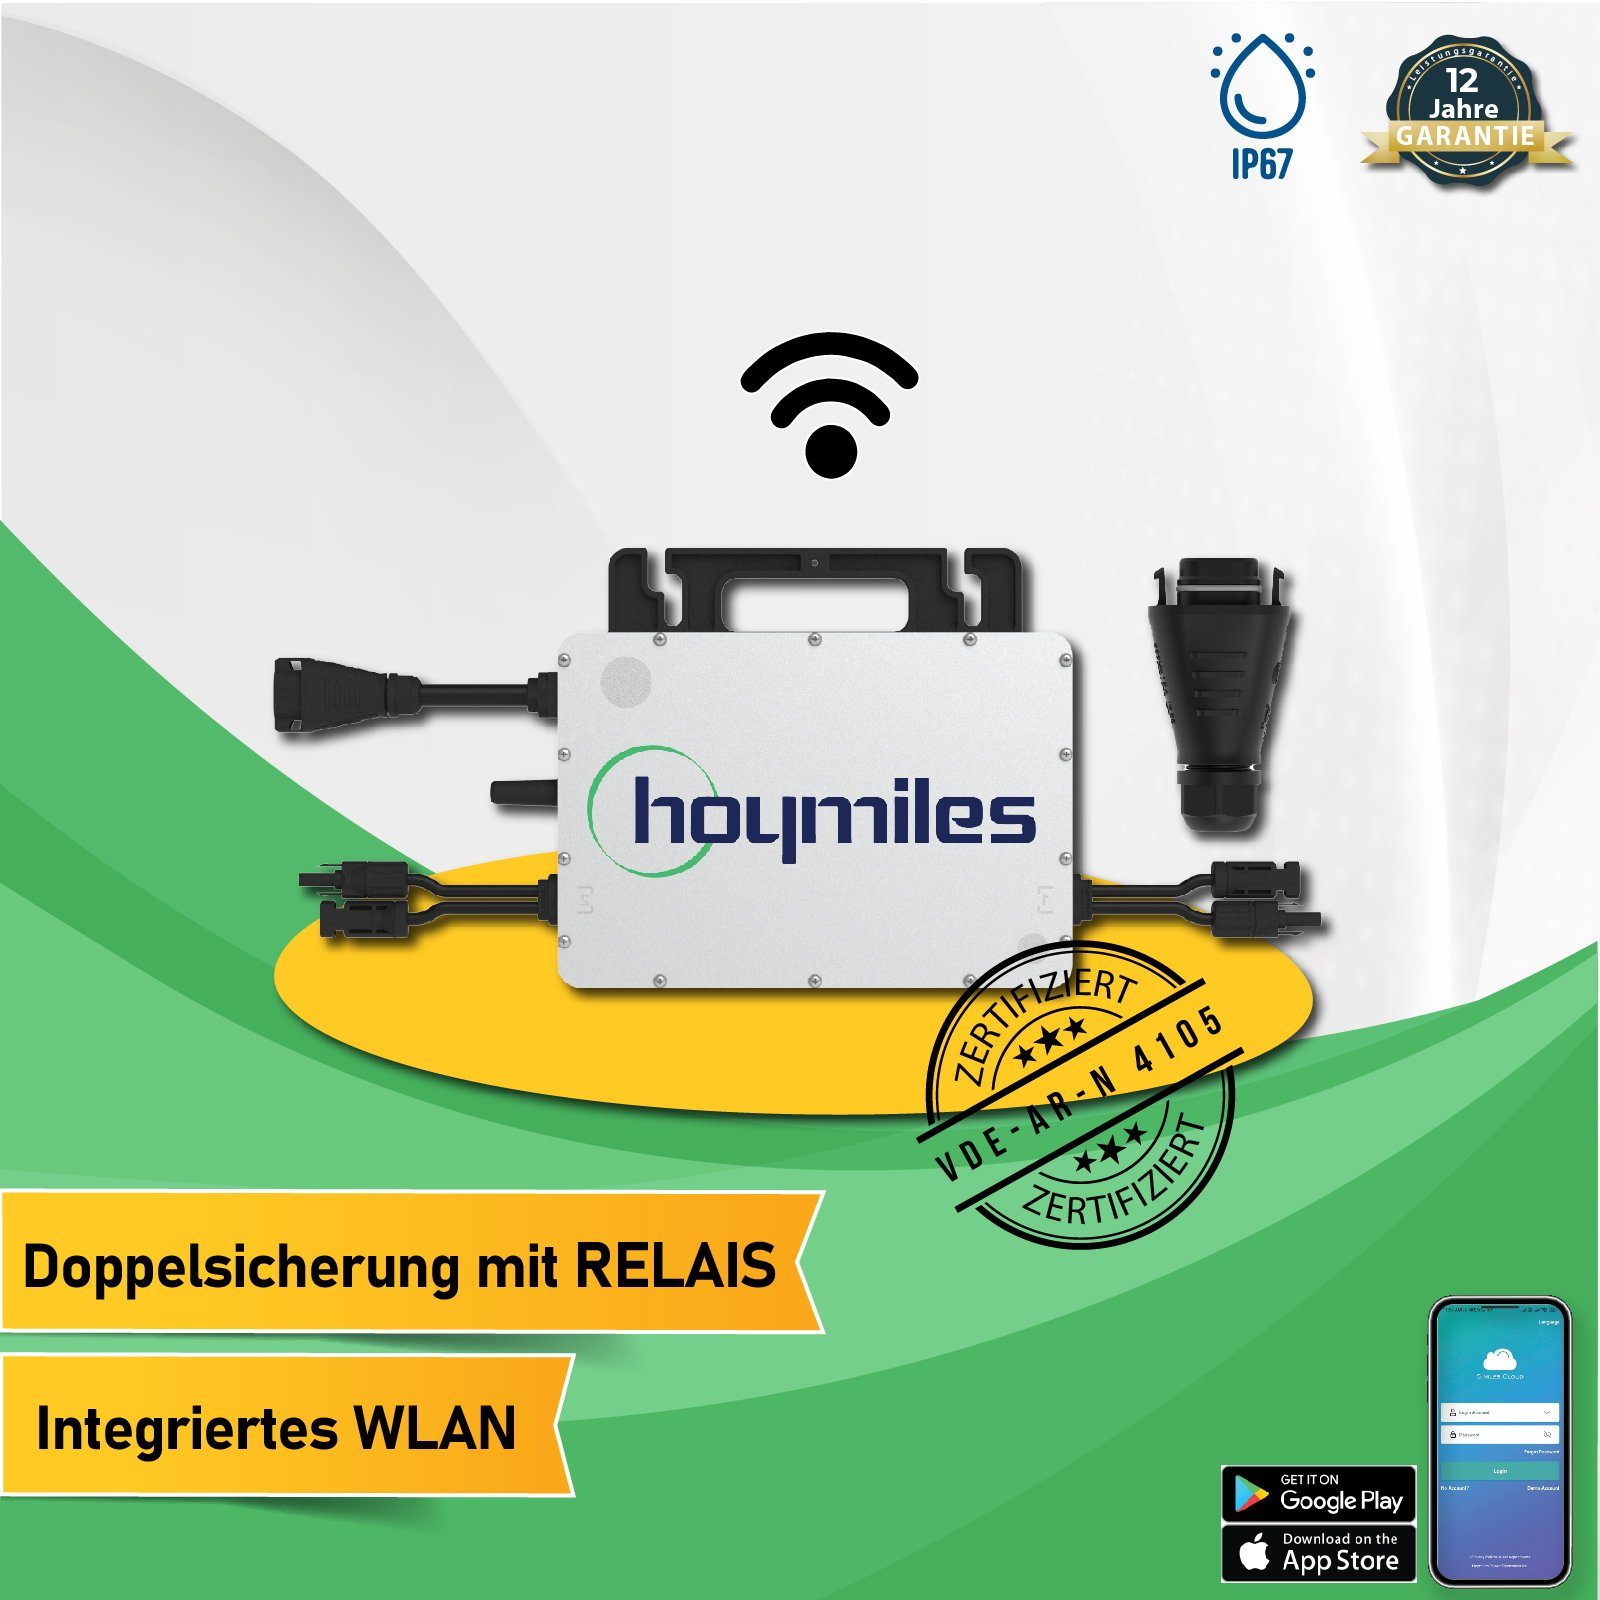 EPP.Solar Wechselrichter Hoymiles Micro-Wechselrichter mit WLAN Funktion  für Balkonkraftwerk, (Die Freigabe der Verbindung für 2 Module beinhaltet  die automatische Upgrade-Fähigkeit), Plug & Play Modulwechselrichter PV-Eingangsleistung,  WLAN-Überwachung